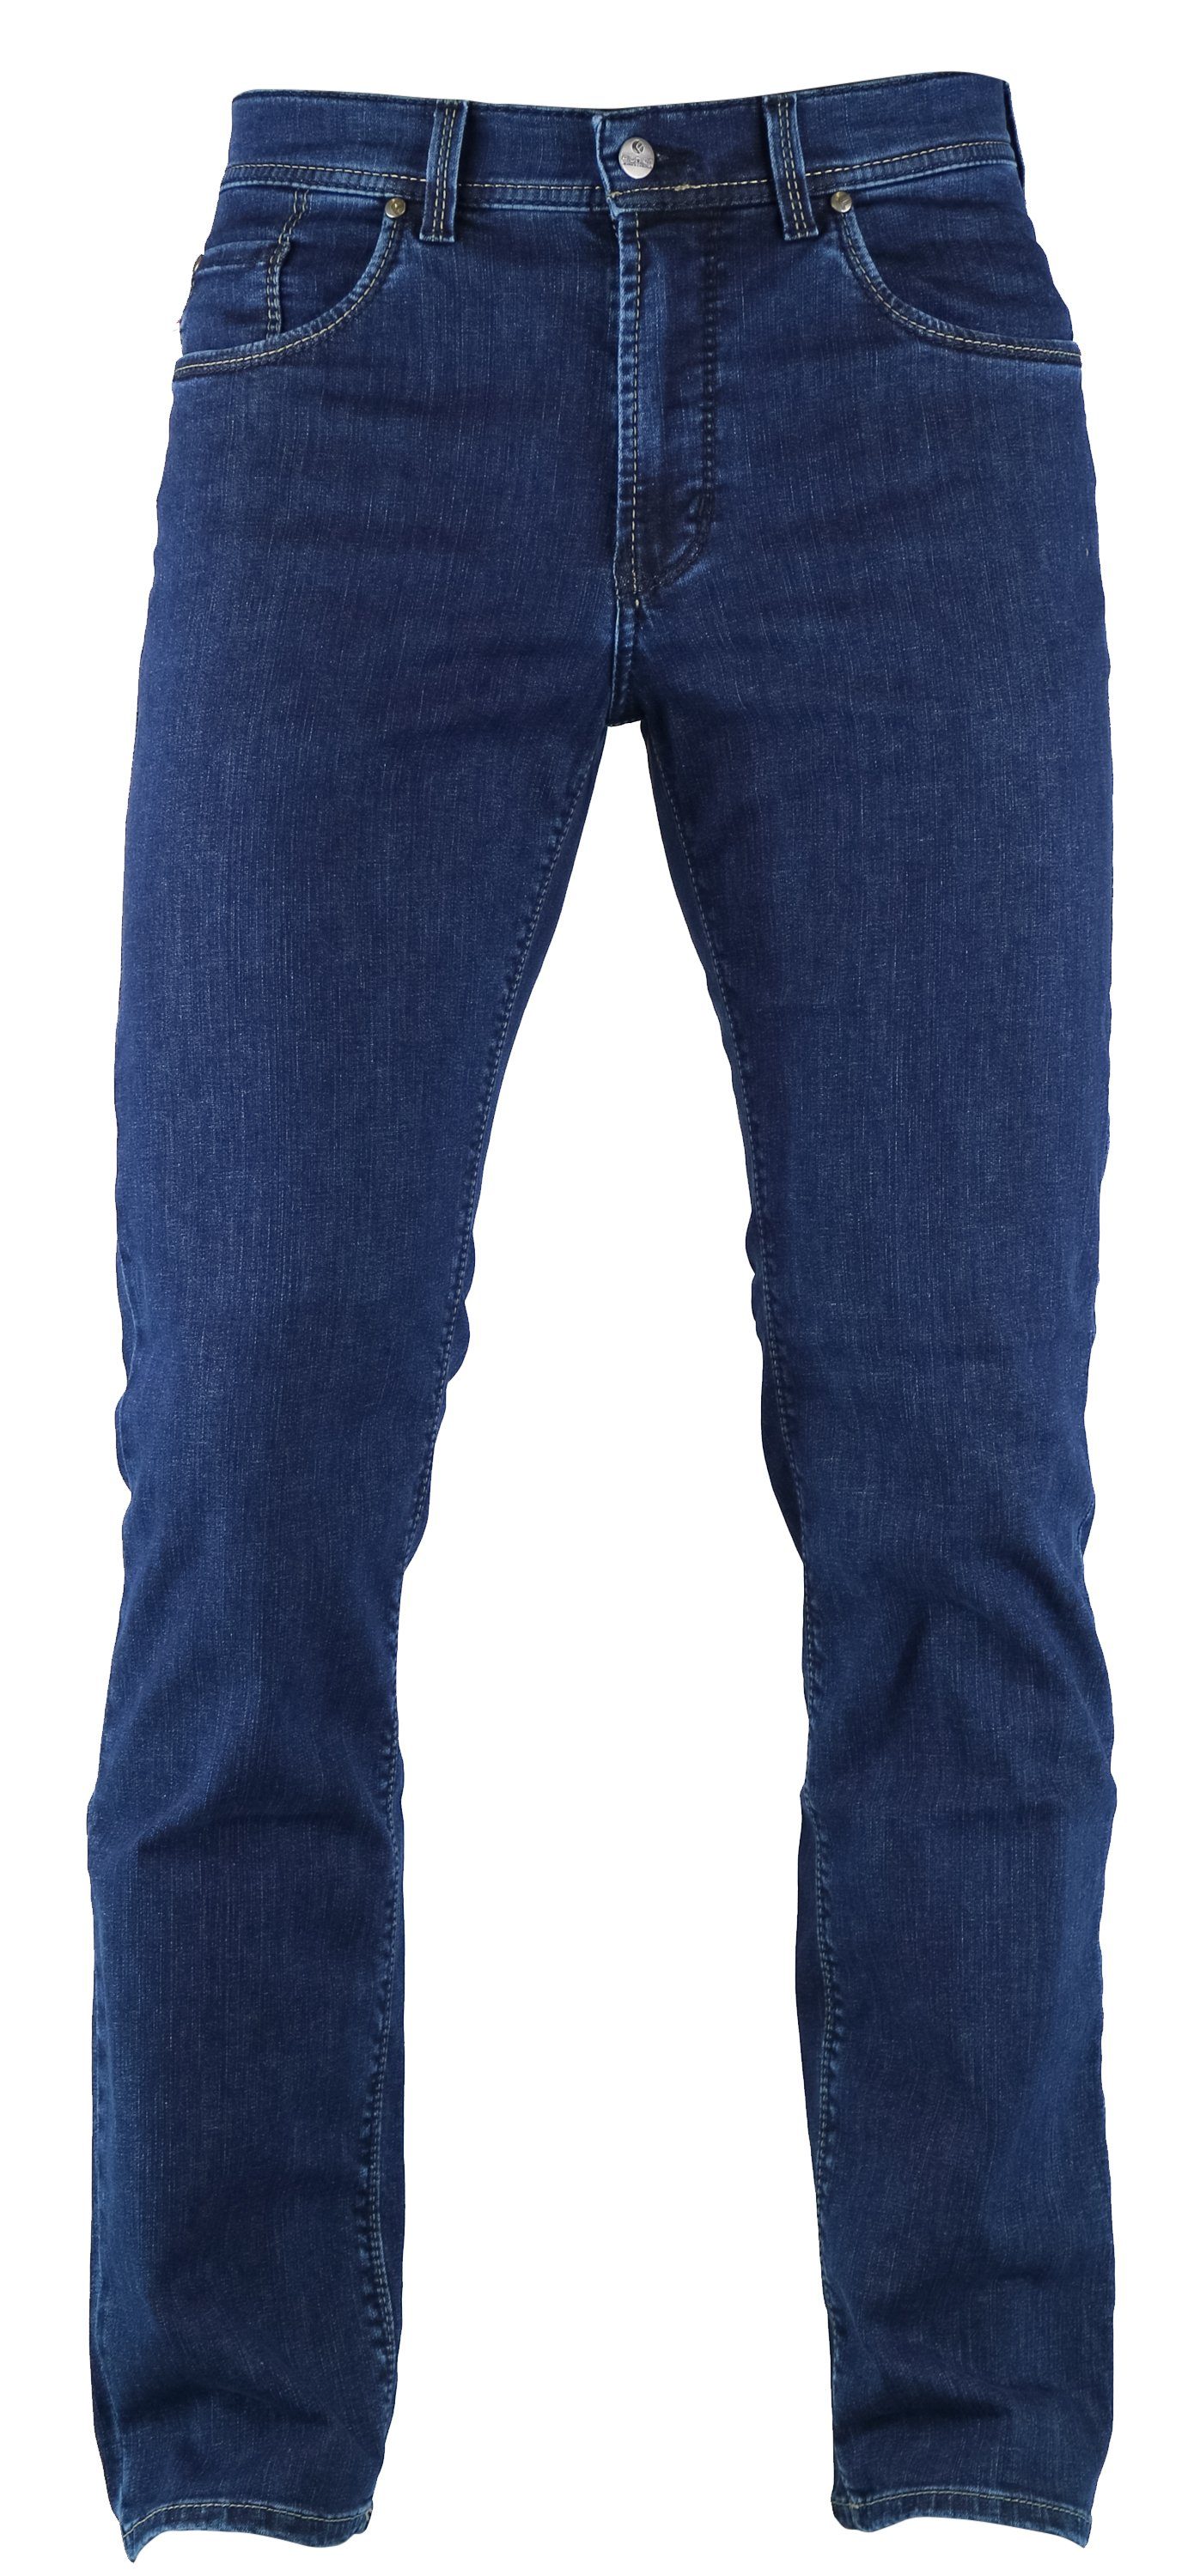 Herren Jeans Pionier 5-Pocket-Jeans PIONIER MARC stone blue 2006 6185.64